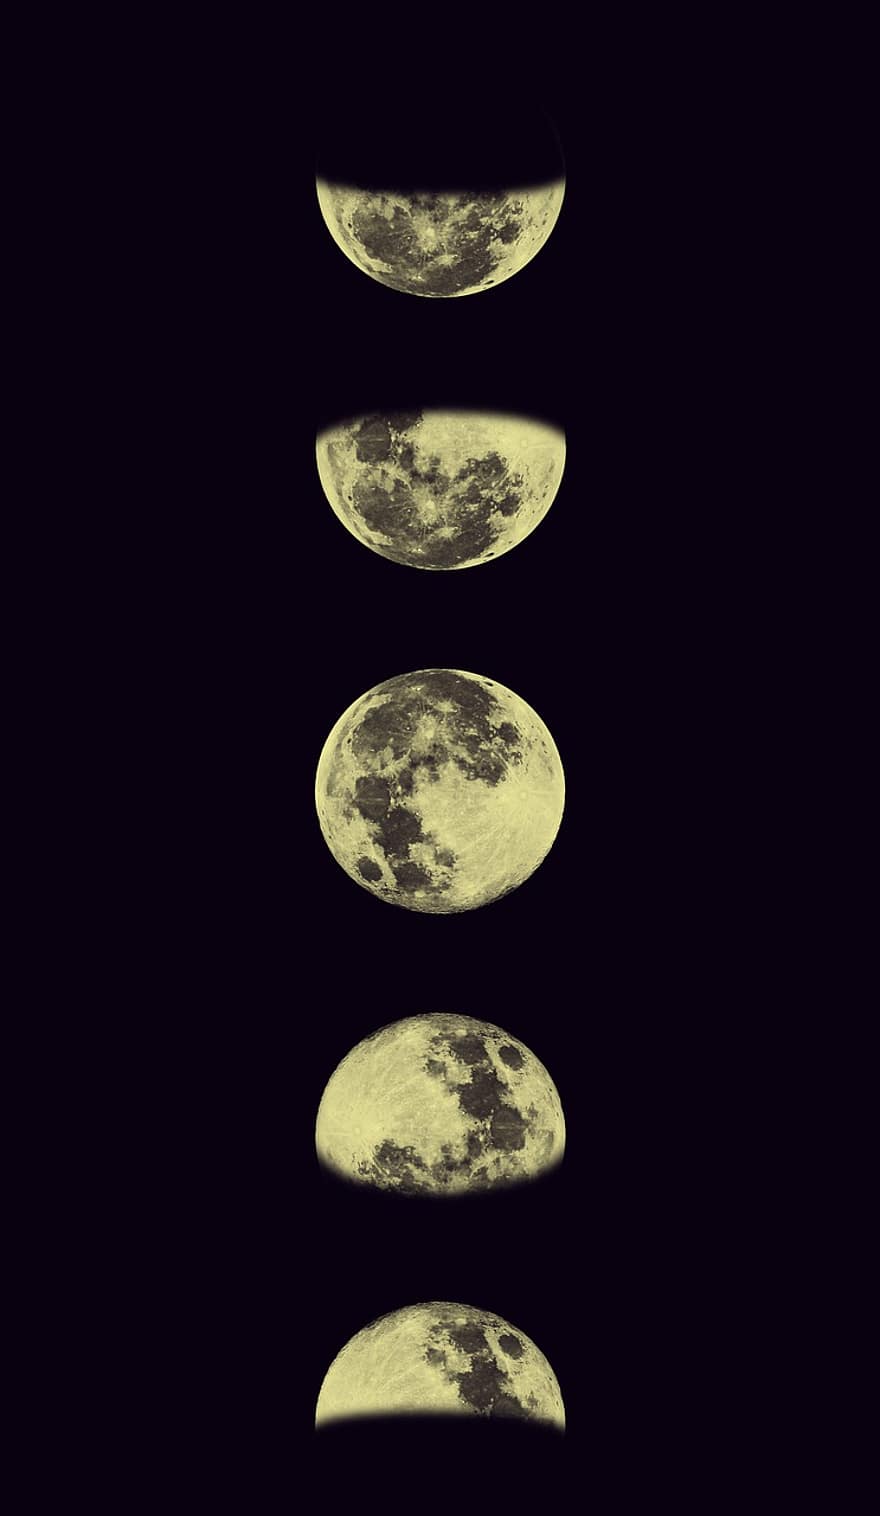 måne, fullmåne, natt, stjärnor, universum, astronomi, månsken, planet, rymden, måneyta, mörk